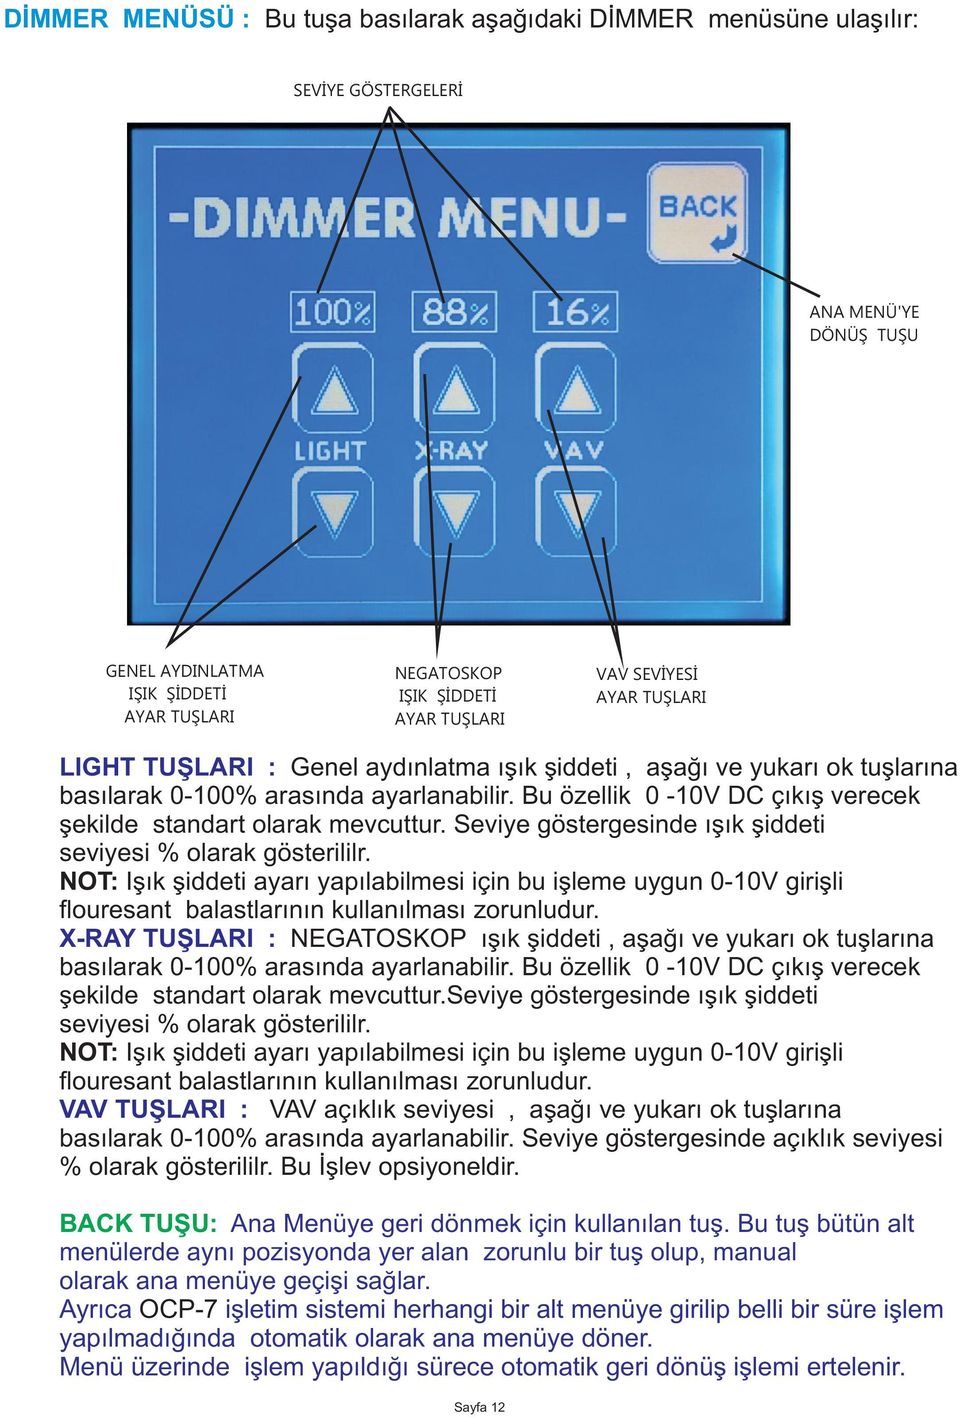 Bu özellik 0-10V DC çýkýþ verecek þekilde standart olarak mevcuttur. Seviye göstergesinde ýþýk þiddeti seviyesi % olarak gösterililr.